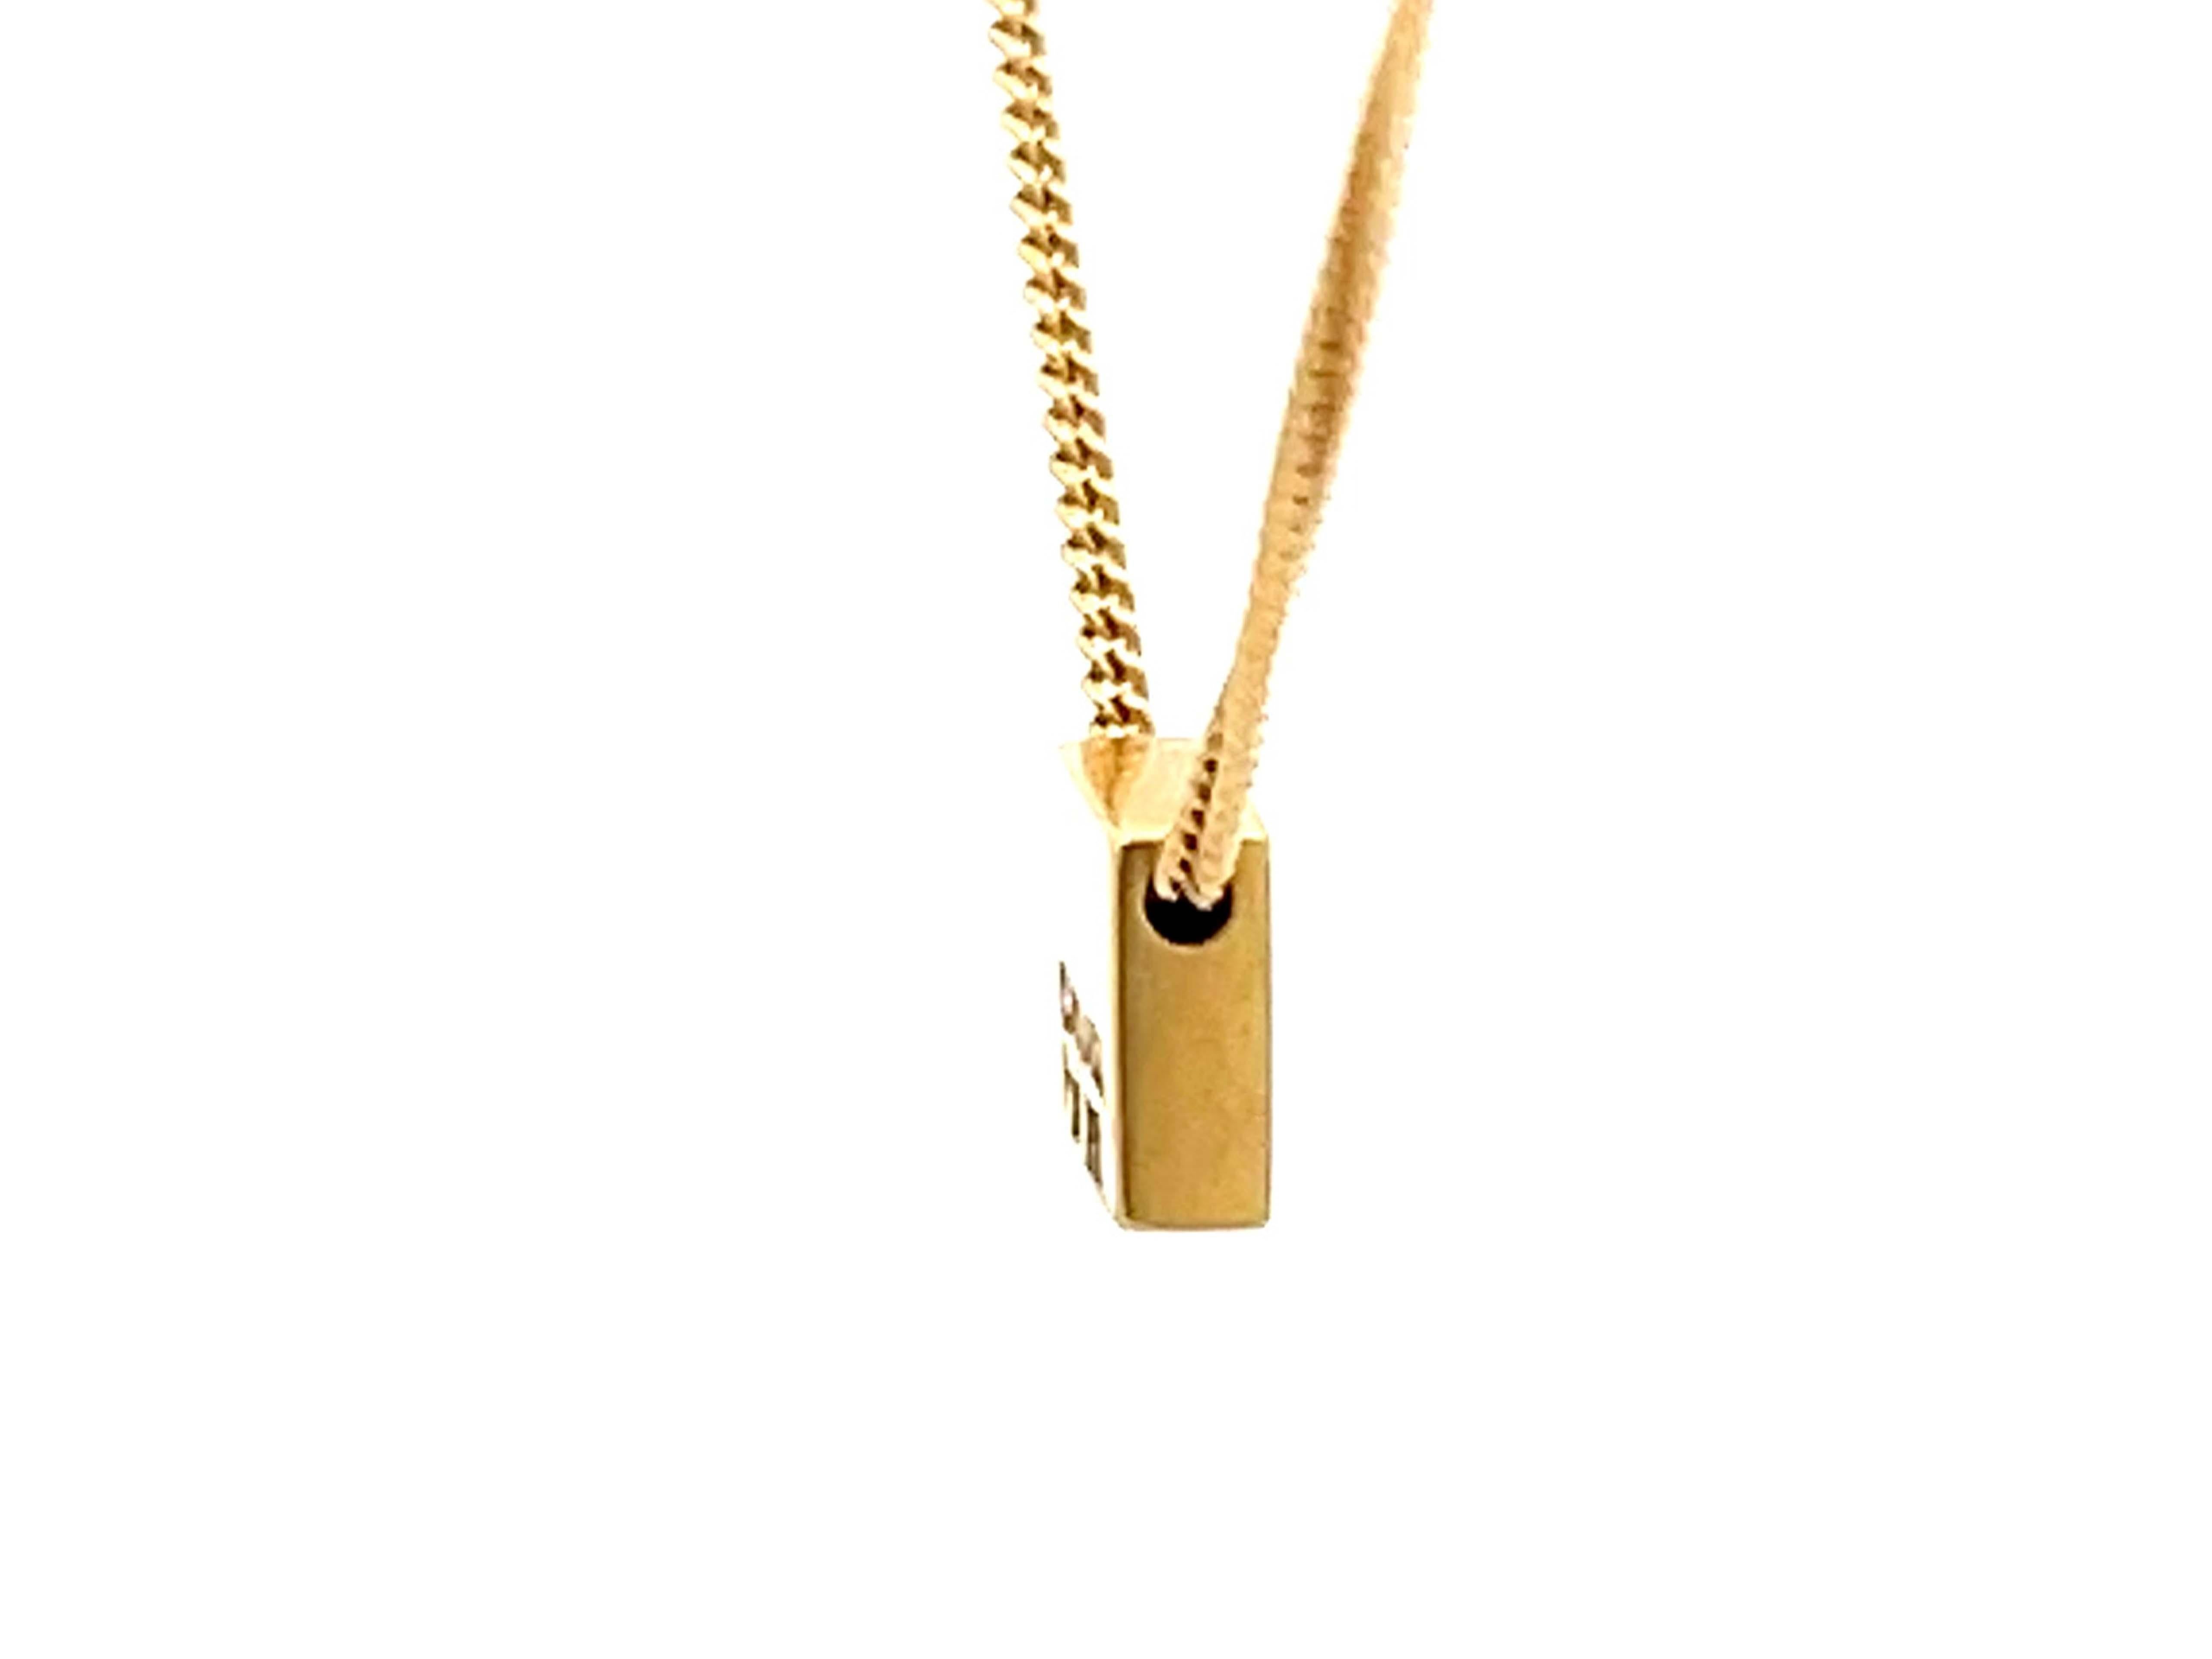 Brilliant Cut Small Square Single Diamond Necklace in 18k Yellow Gold For Sale